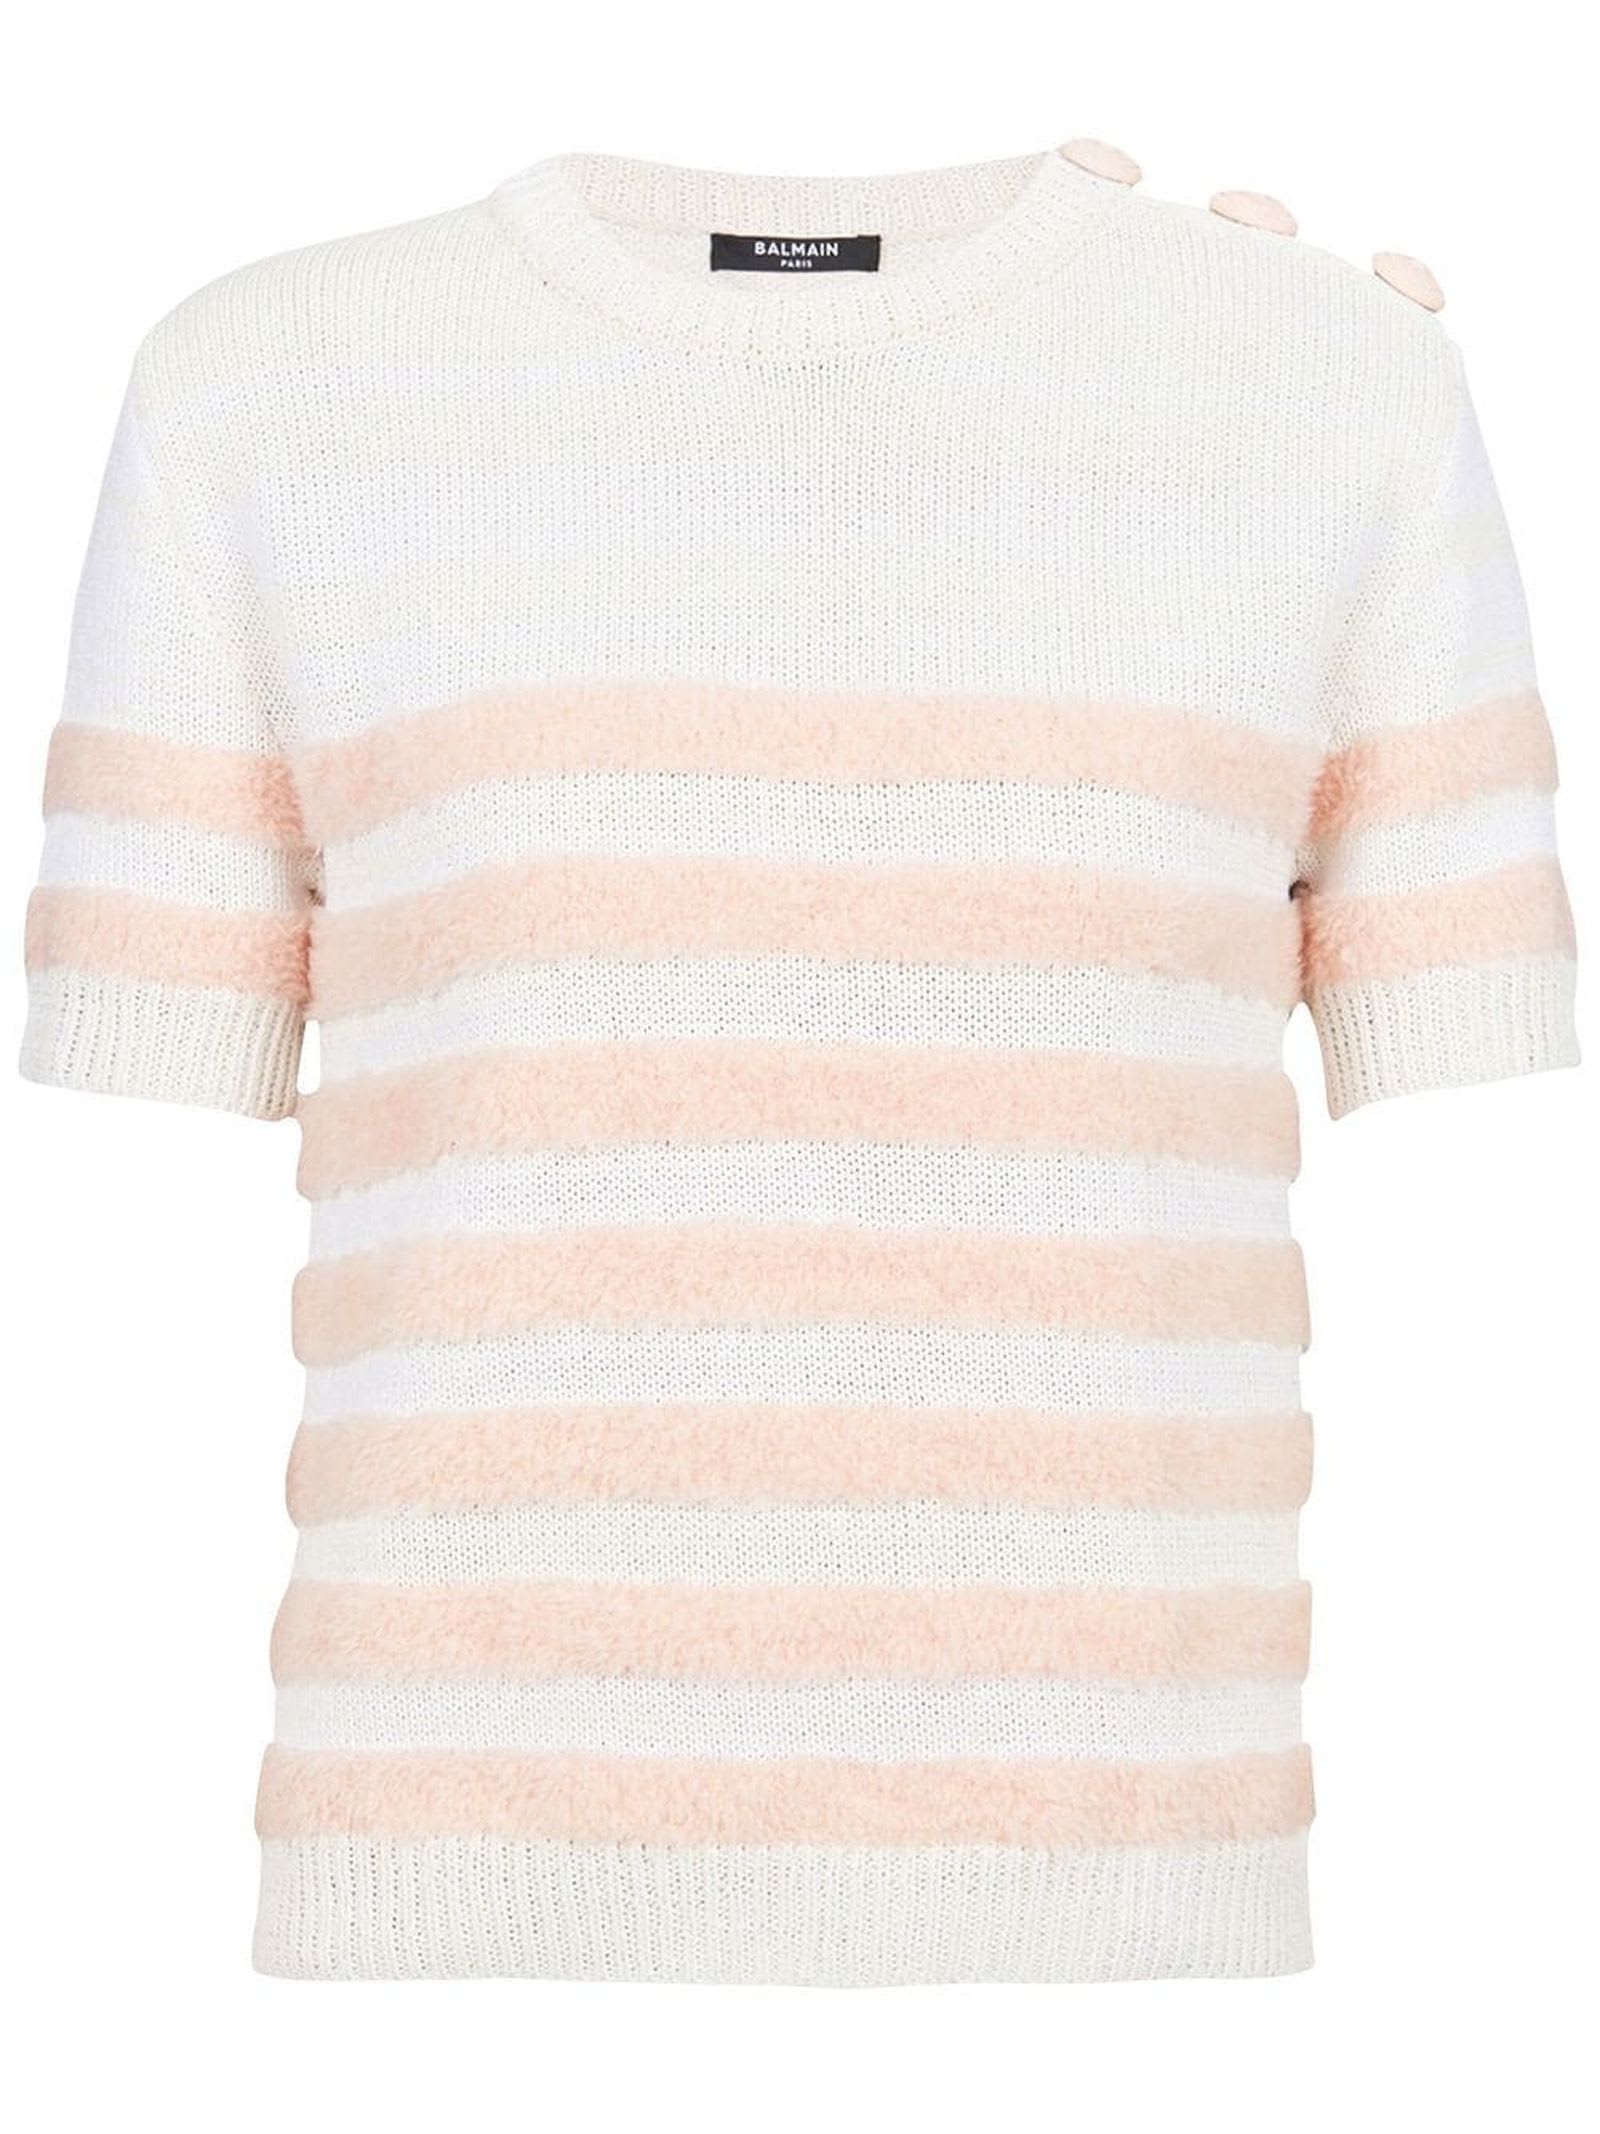 Balmain Pink Wool Blend Knit T-shirt